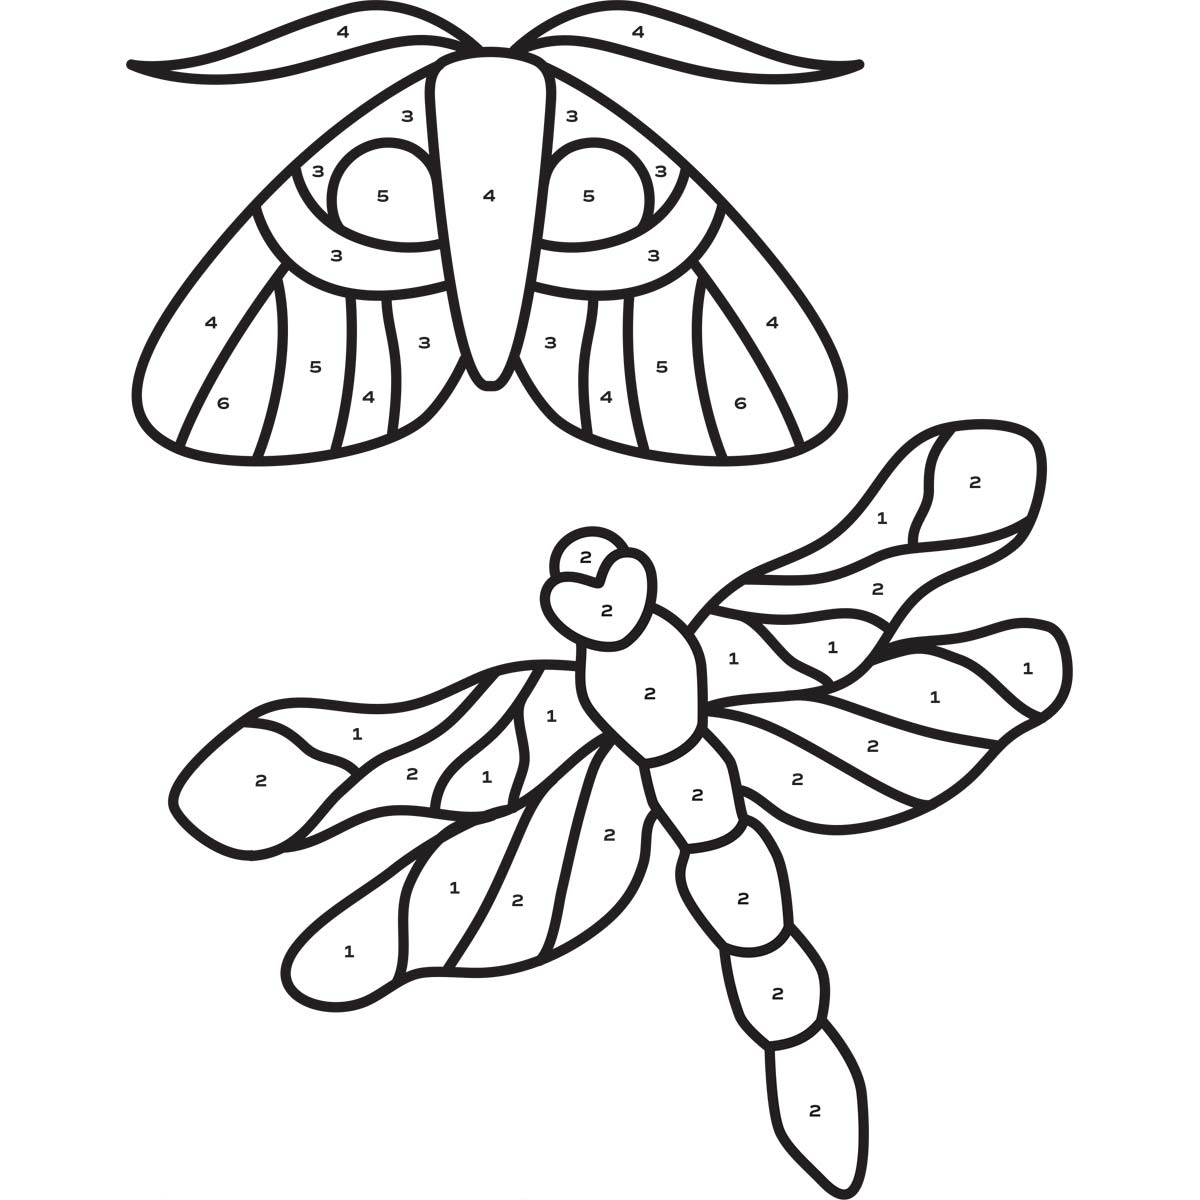 Lady Dragonfly & Sir Moth